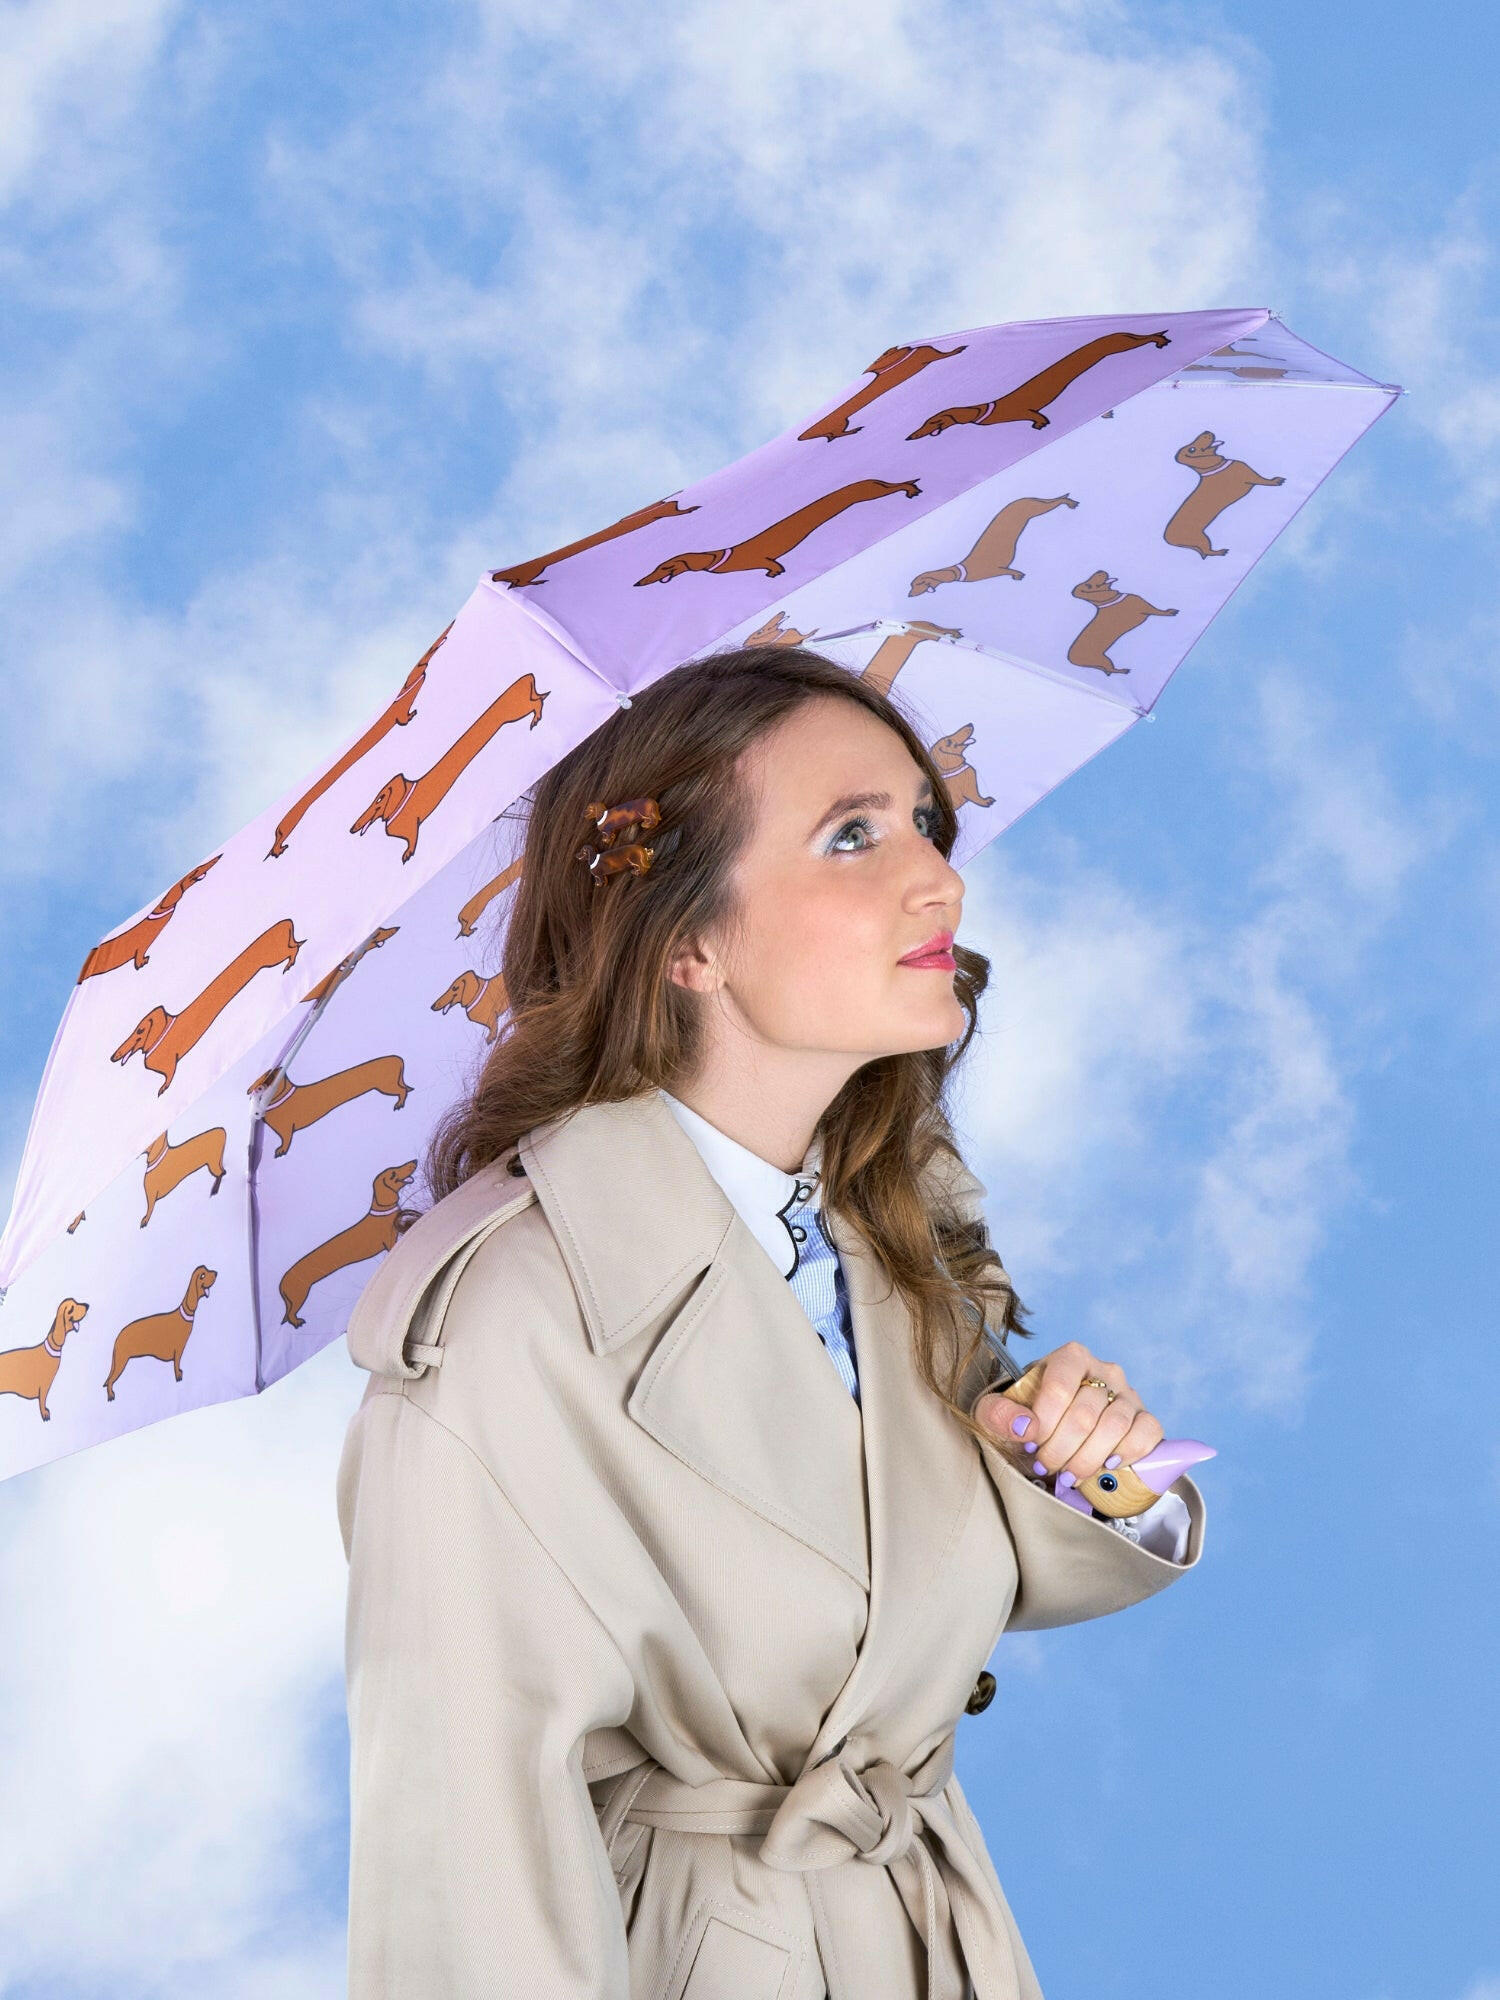 Dachshund Lilac Eco-friendly Umbrella.